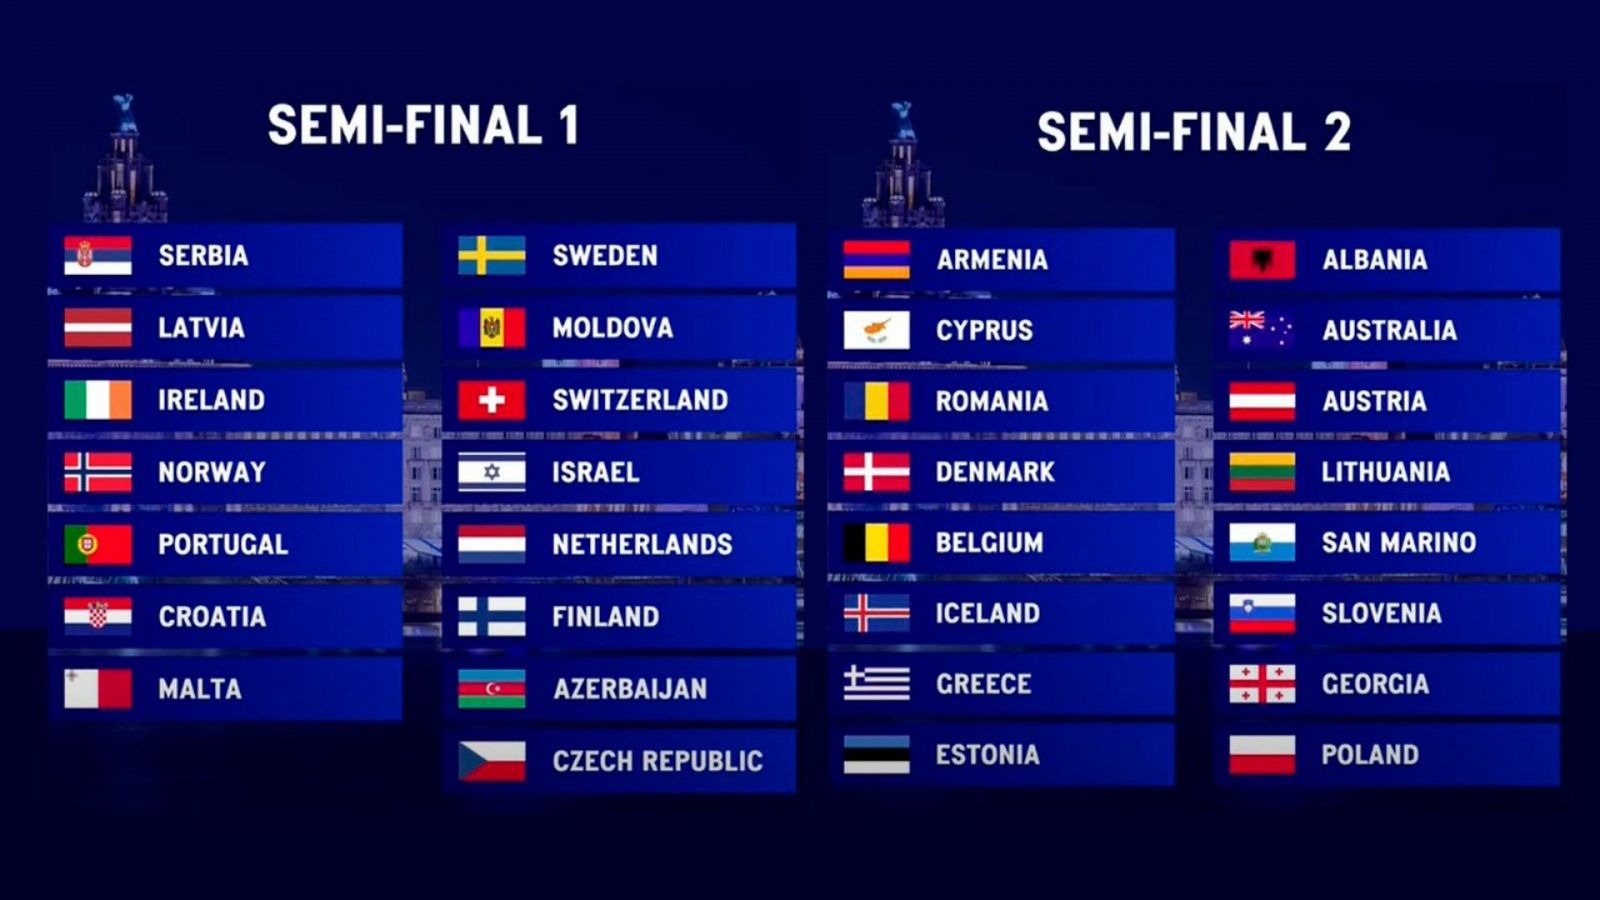 Cuantos paises se clasifican en la semifinal de eurovision